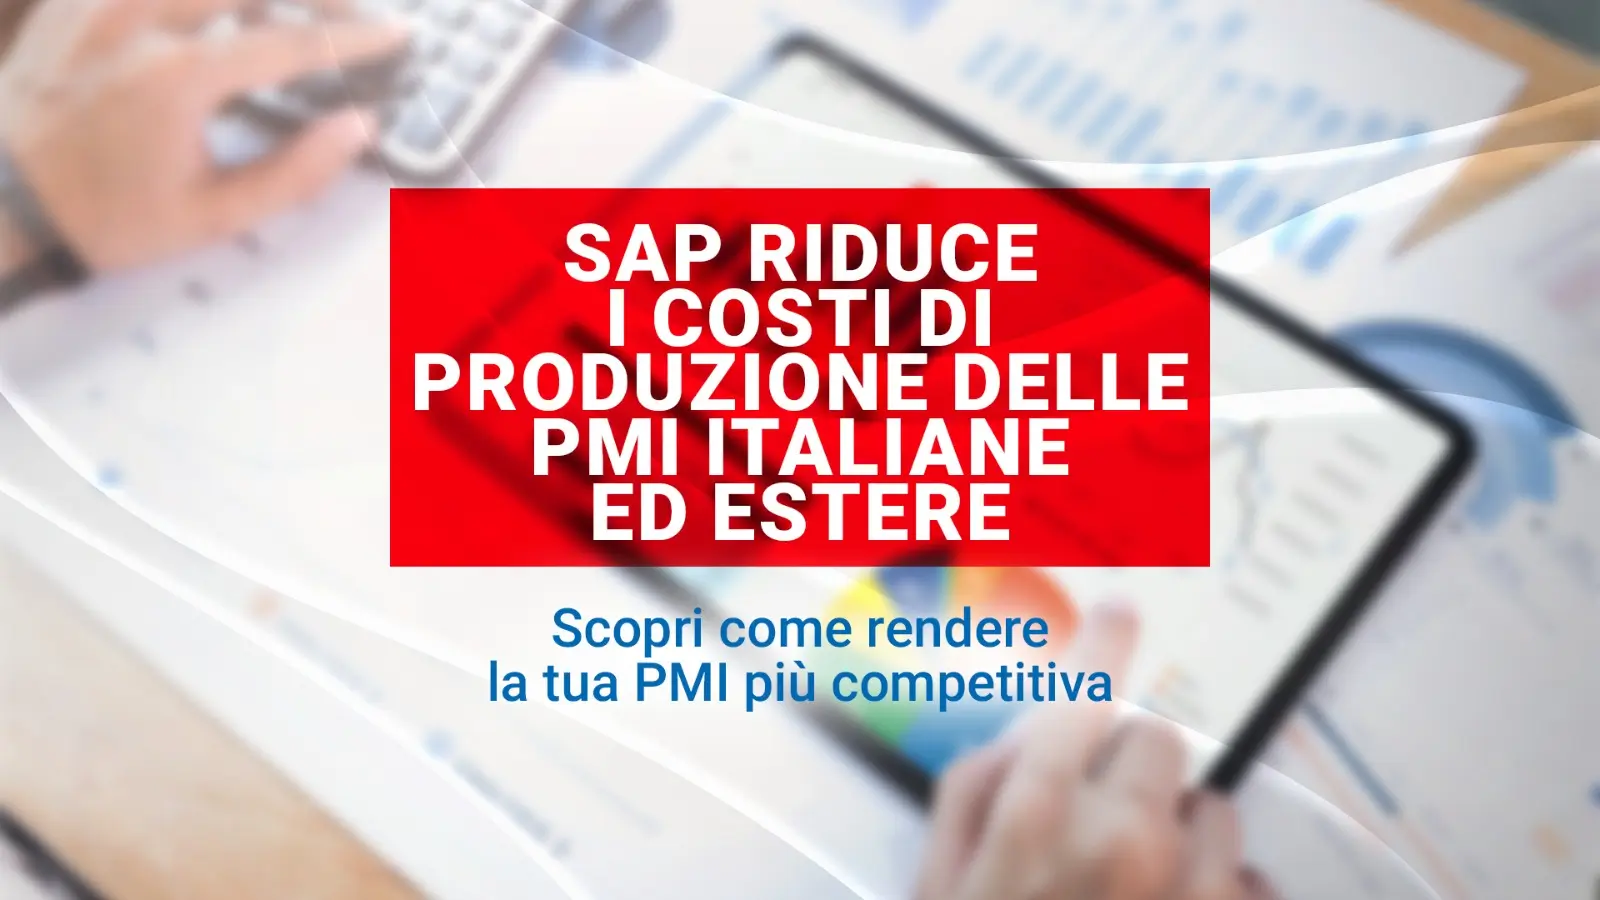 SAP Riduce i Costi Produzione delle PMI Italiane ed Estere